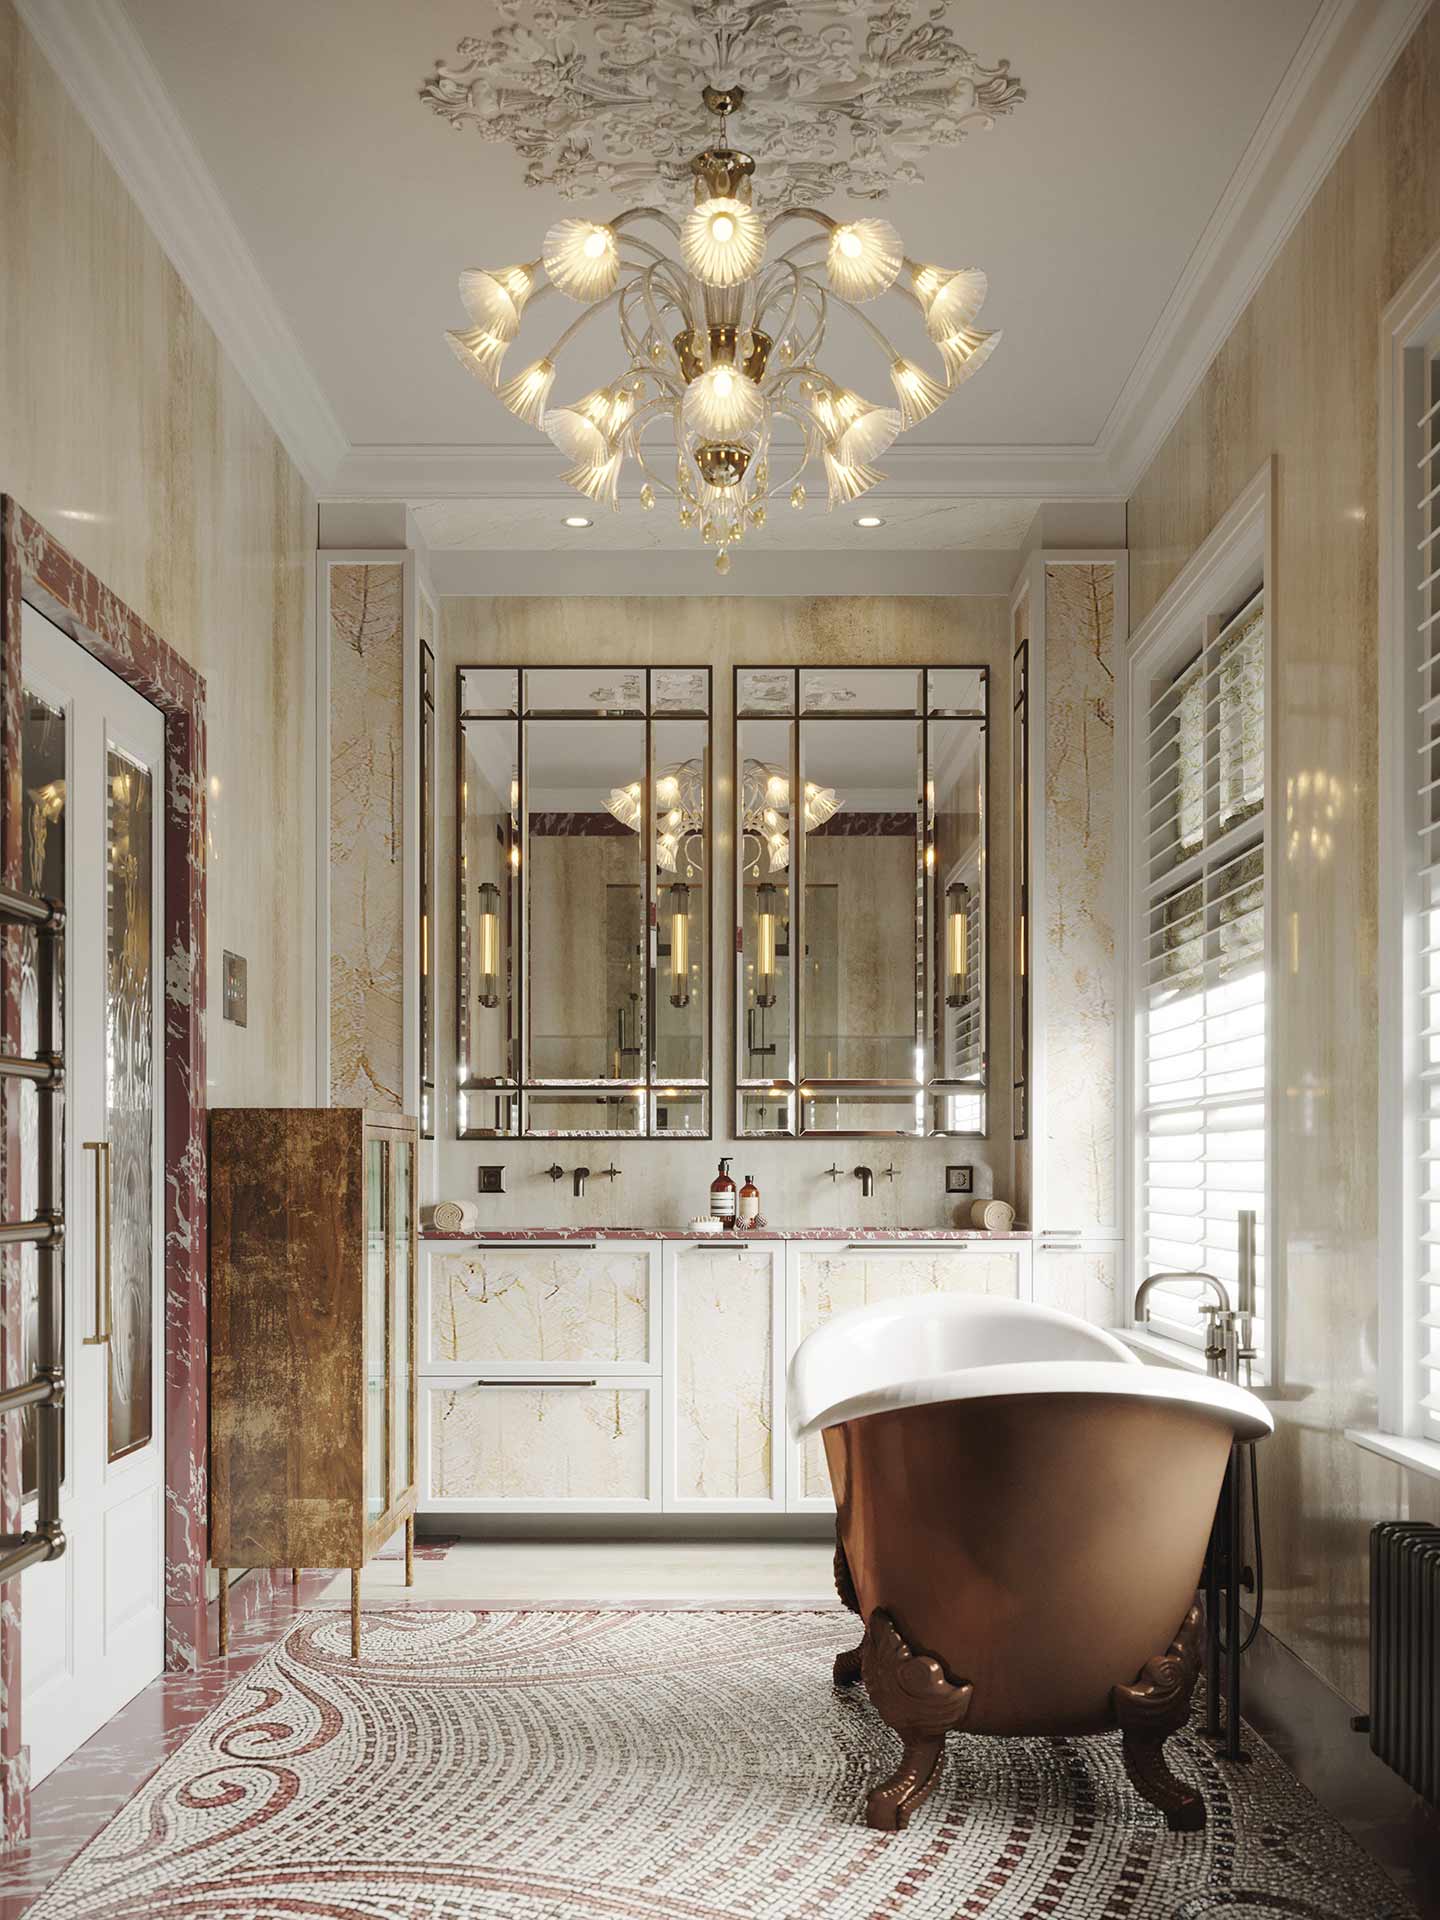 Innenvisualisierung-Art-Deco-Stil-Wohnung-Badezimmer